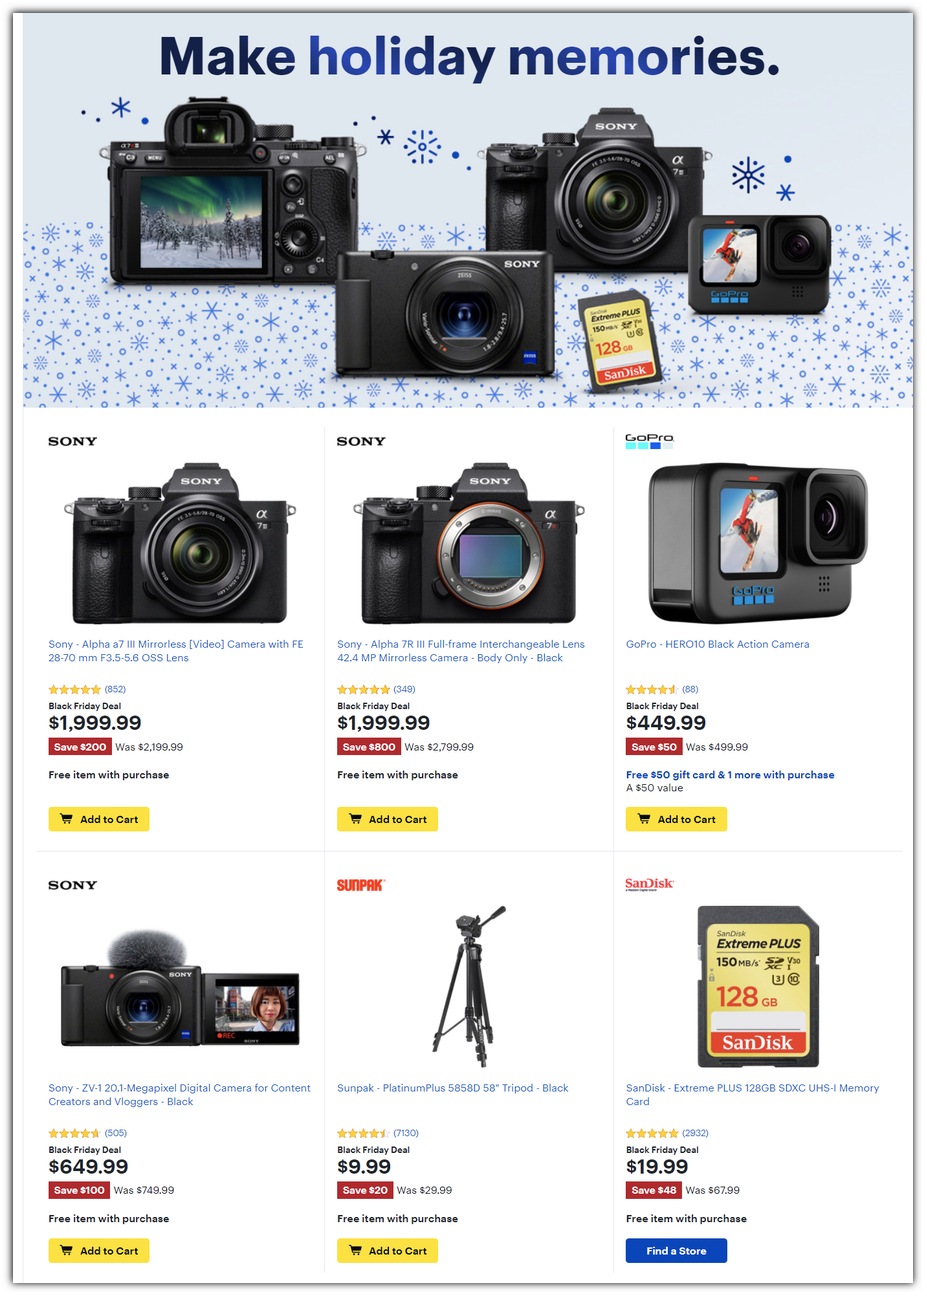 DSLR Cameras / GoPro